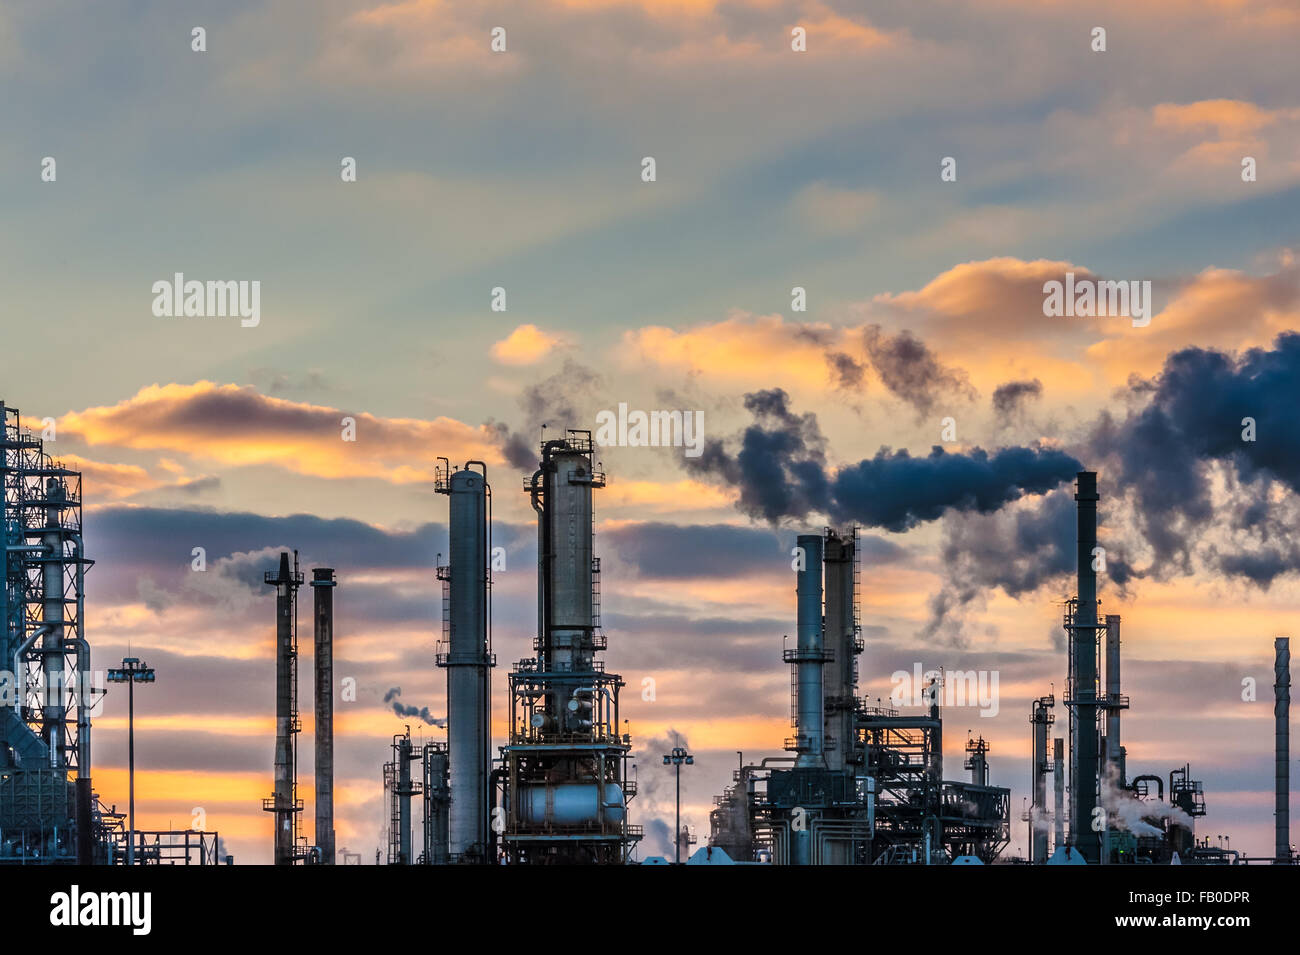 Valero Raffinerie vor einem dramatischen Sonnenuntergang Himmel in Memphis, Tennessee, USA. Stockfoto